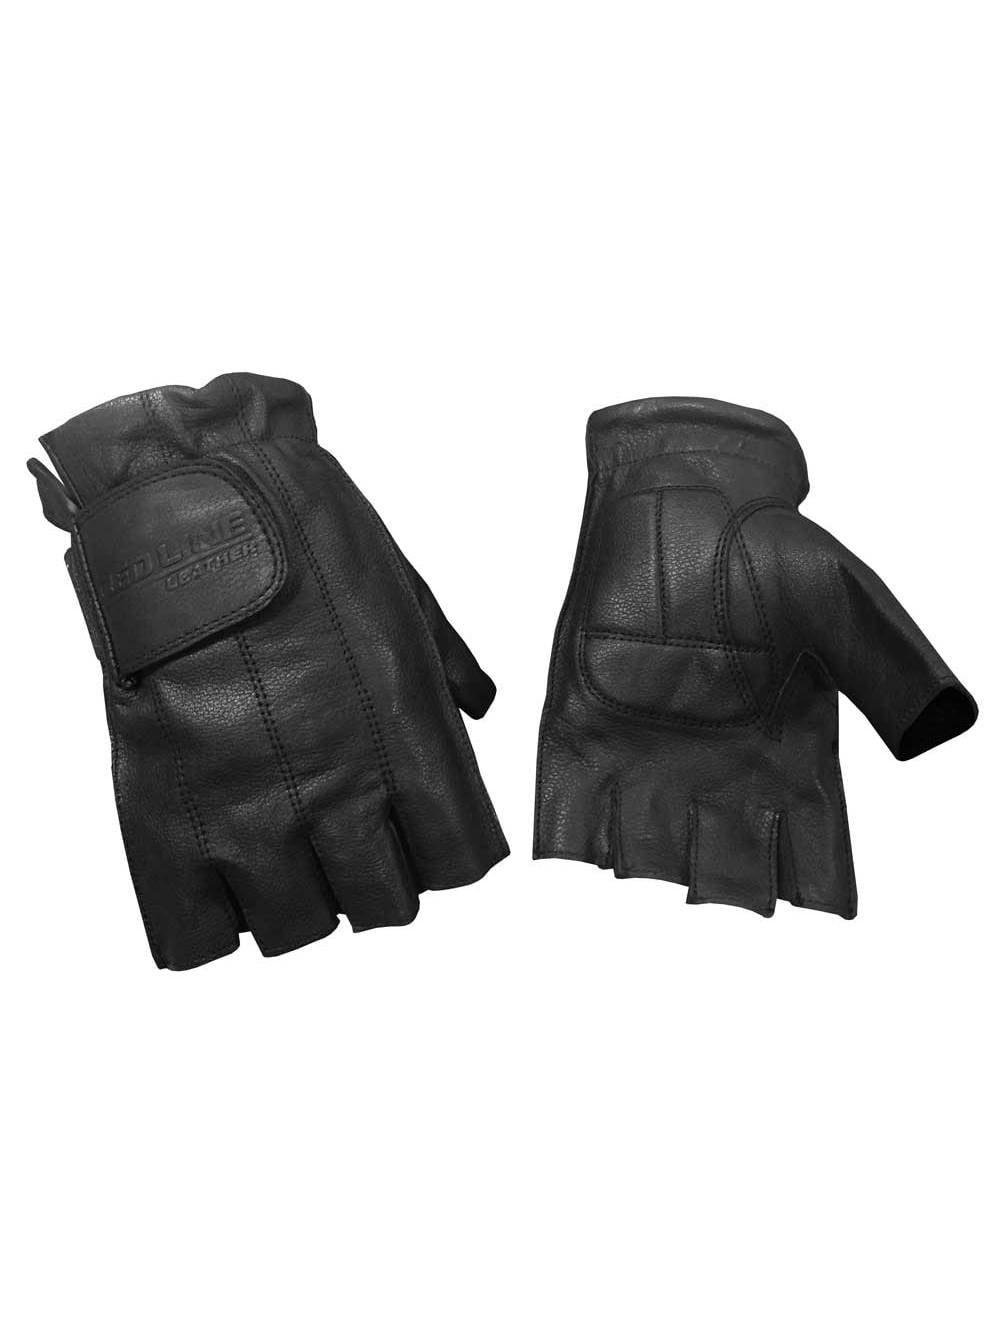 Black G-055 Redline Men's Anti-Vibration Full-Finger Motorcycle Leather Gloves 